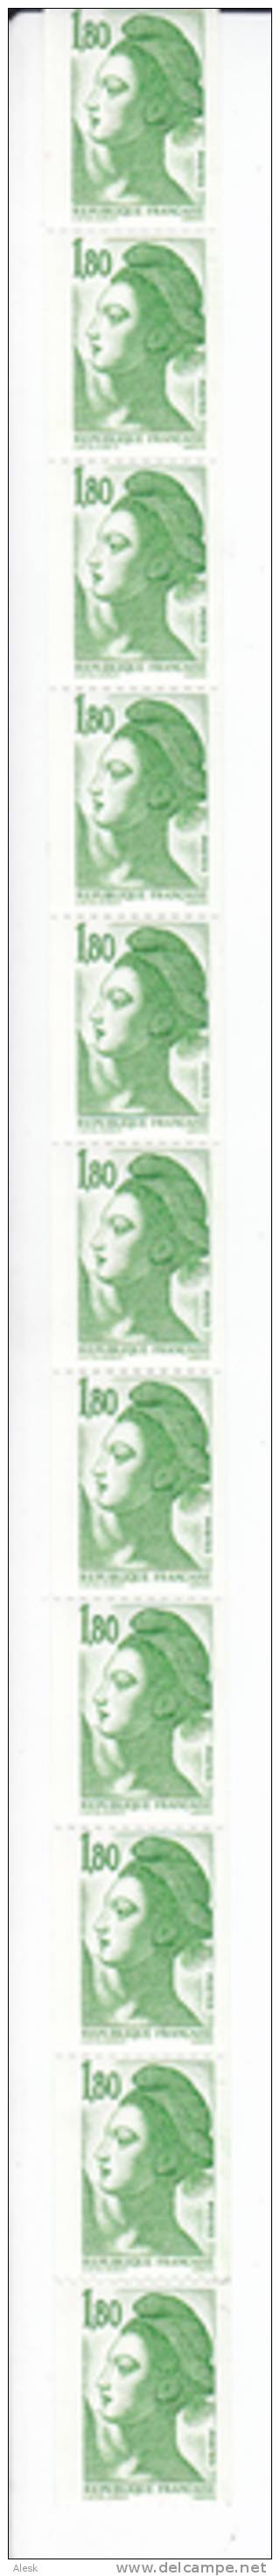 ROULETTES De 11 Timbres Liberté De Gandon 1.80fr Vert N° 86a - Coil Stamps